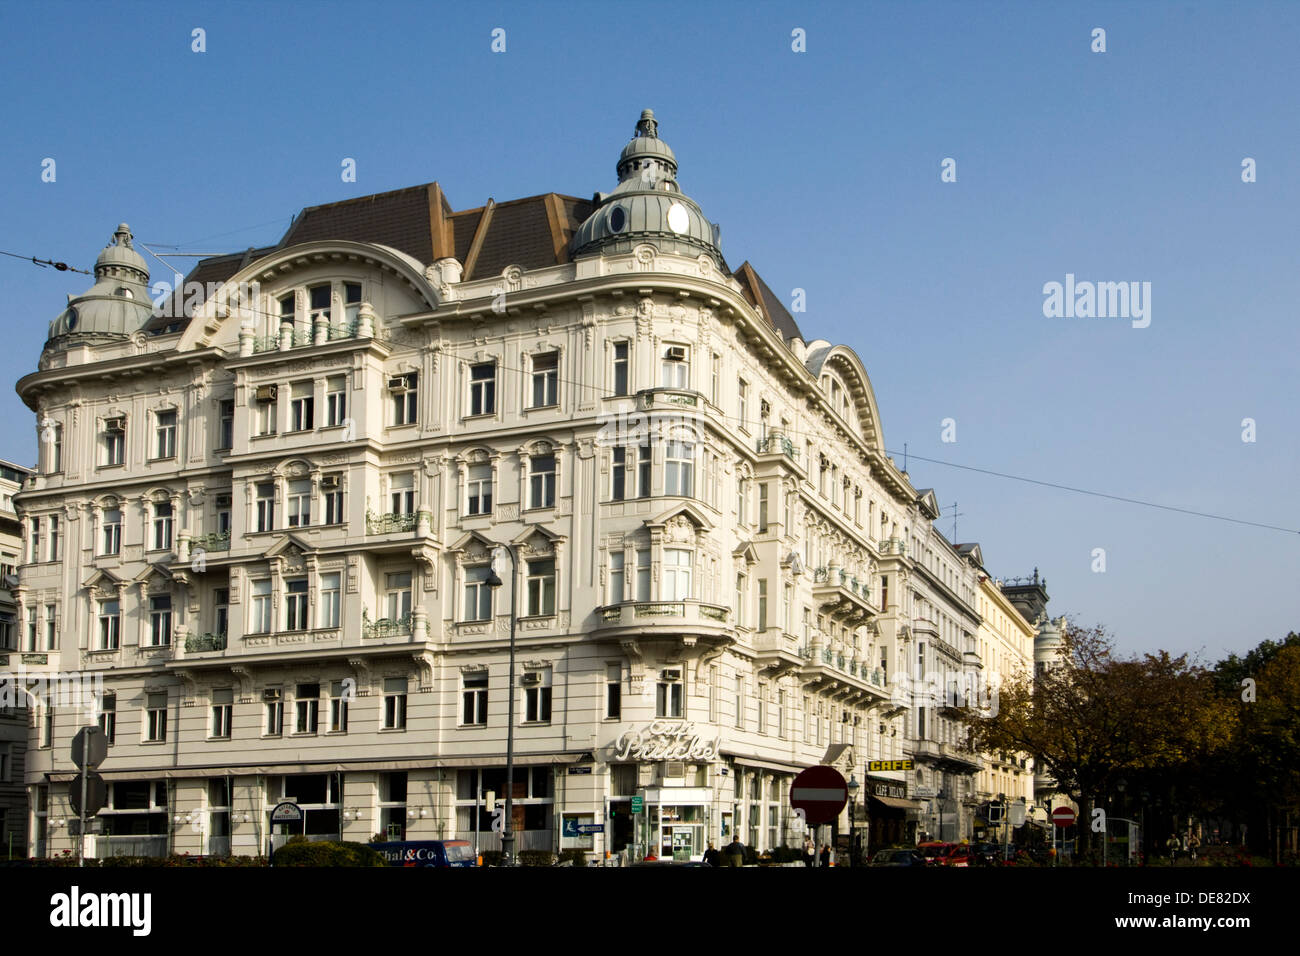 Österreich, Wien 1, Stubentor, im schönen Altbau befindet sich das Cafe Prückel, das Wiener Kaffeehaus an der Ringstraße. Foto Stock